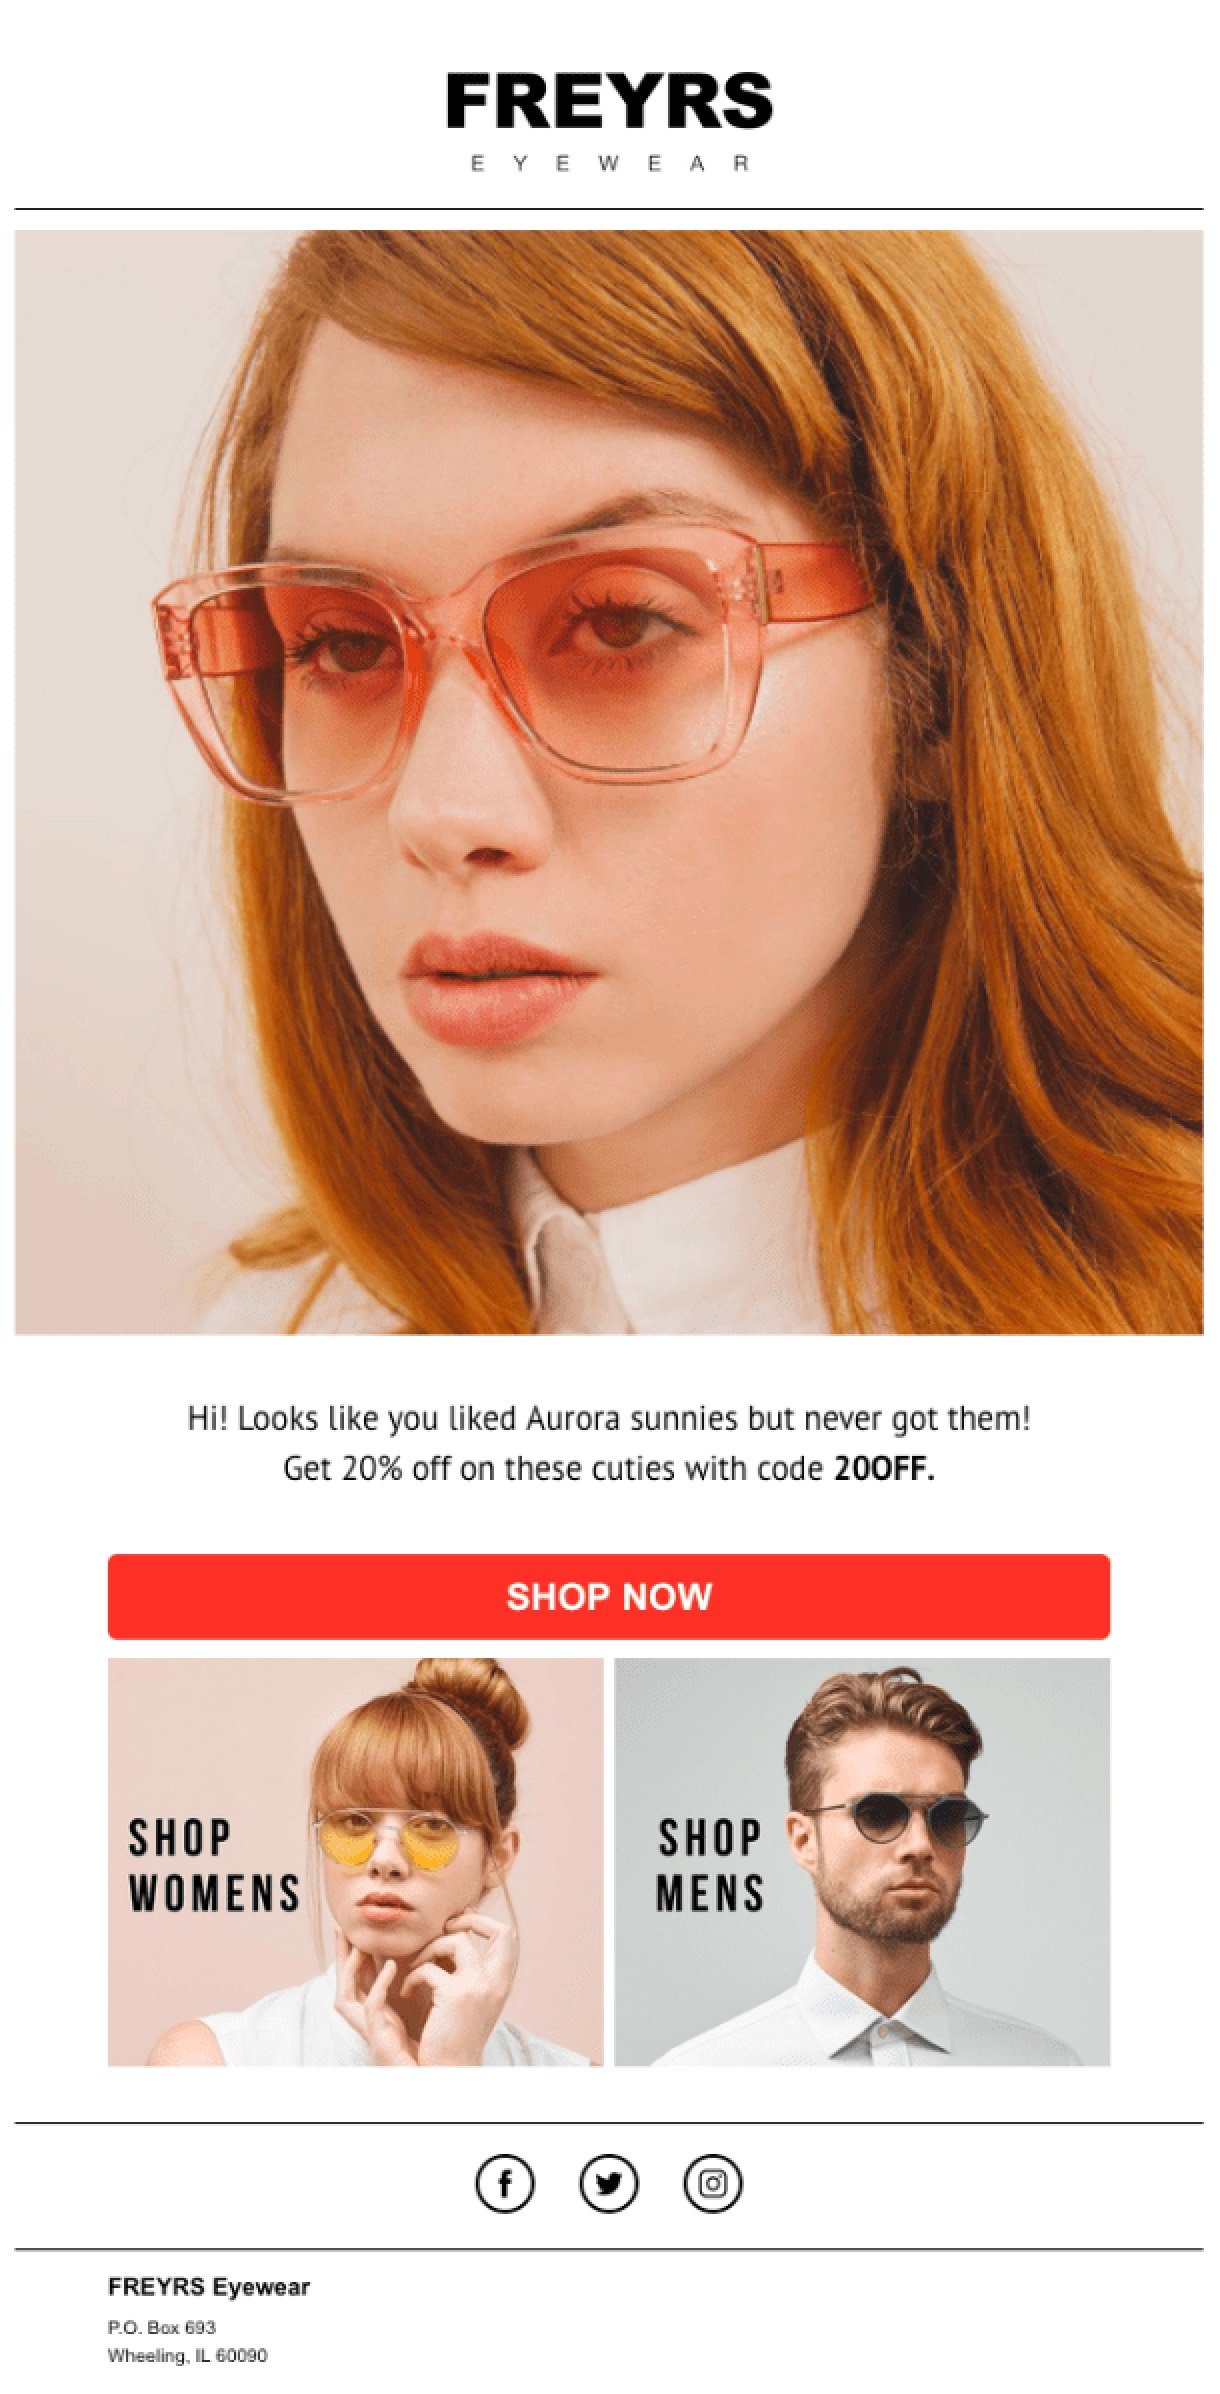 FREYRS eyewear ecommerce abandoned cart newsletter example